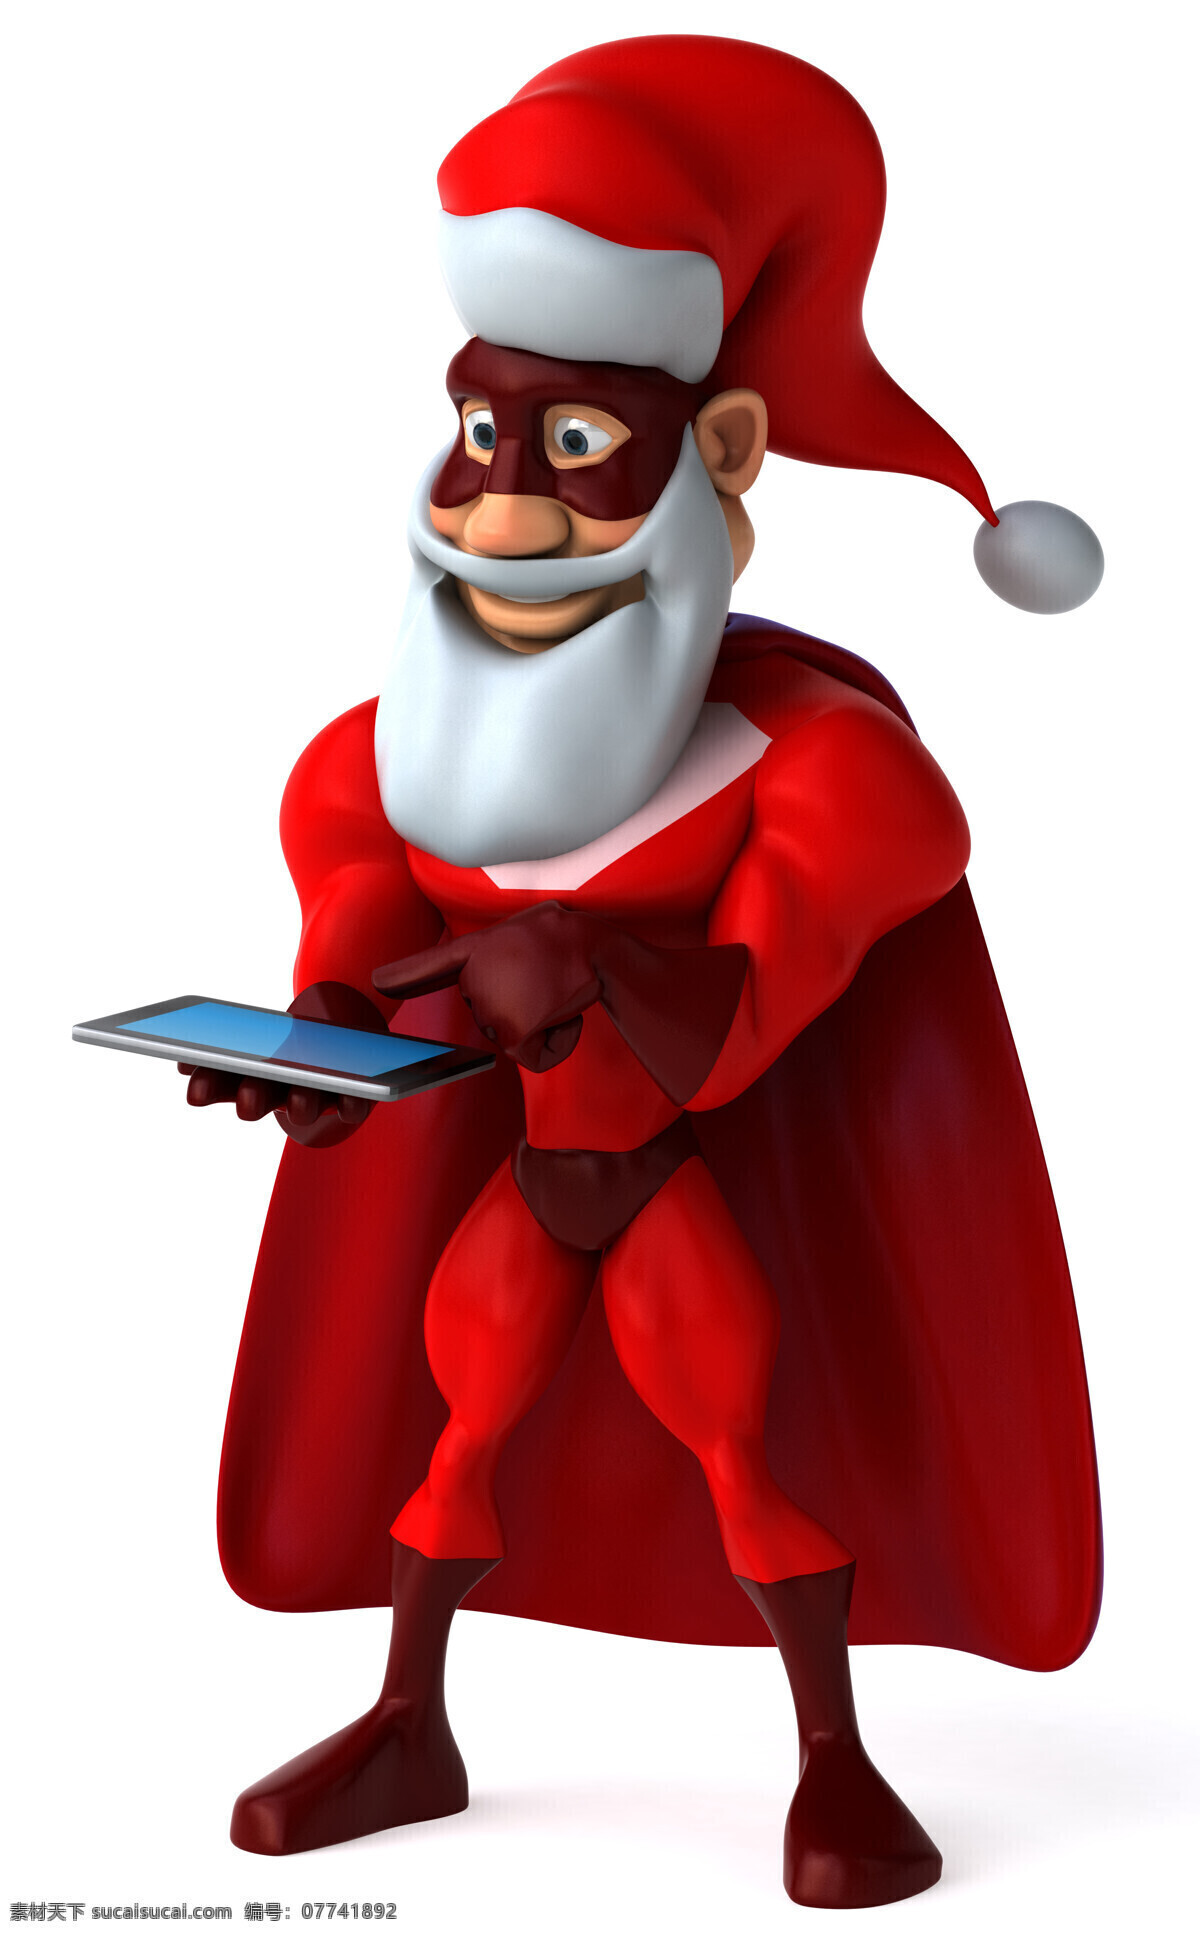 玩 平板电脑 圣诞老人 卡通人物 圣诞节 节日素材 圣诞素材 节日庆典 生活百科